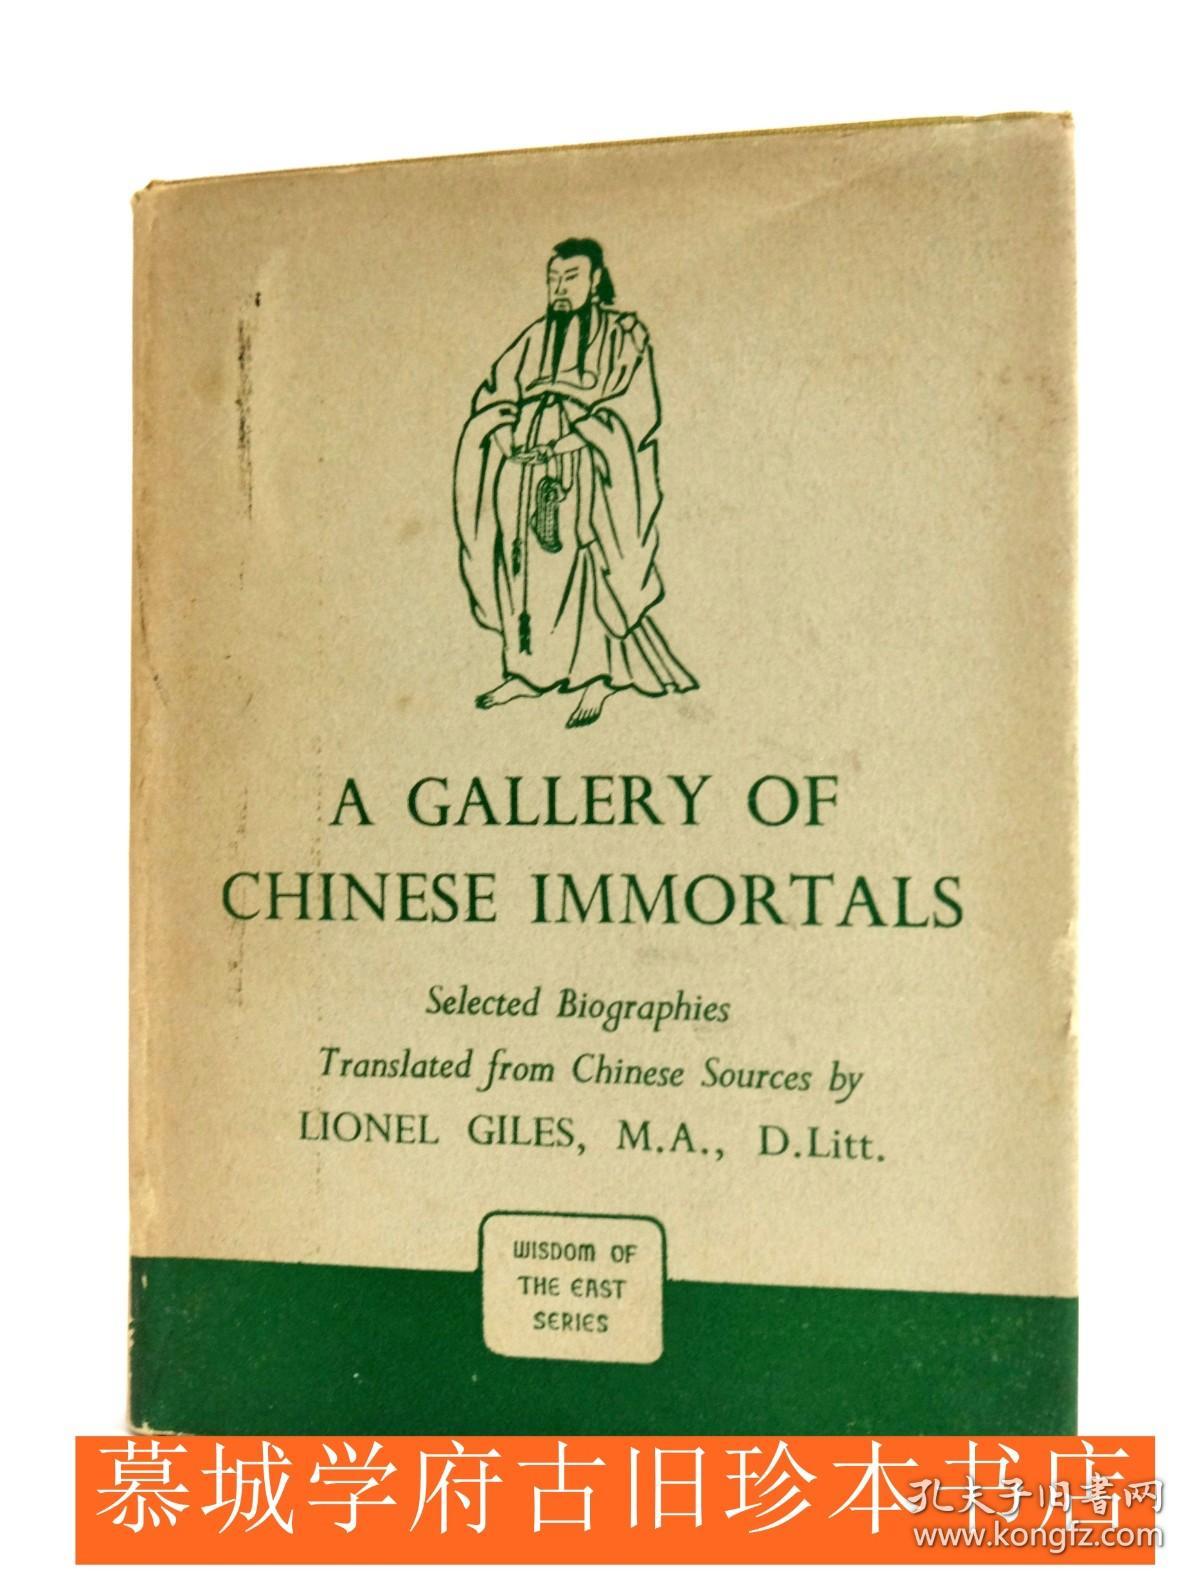 1948年版/翟林奈编译《图说中国列仙》A Gallery of Chinese Immortals Selected Biographies by Lionel Giles